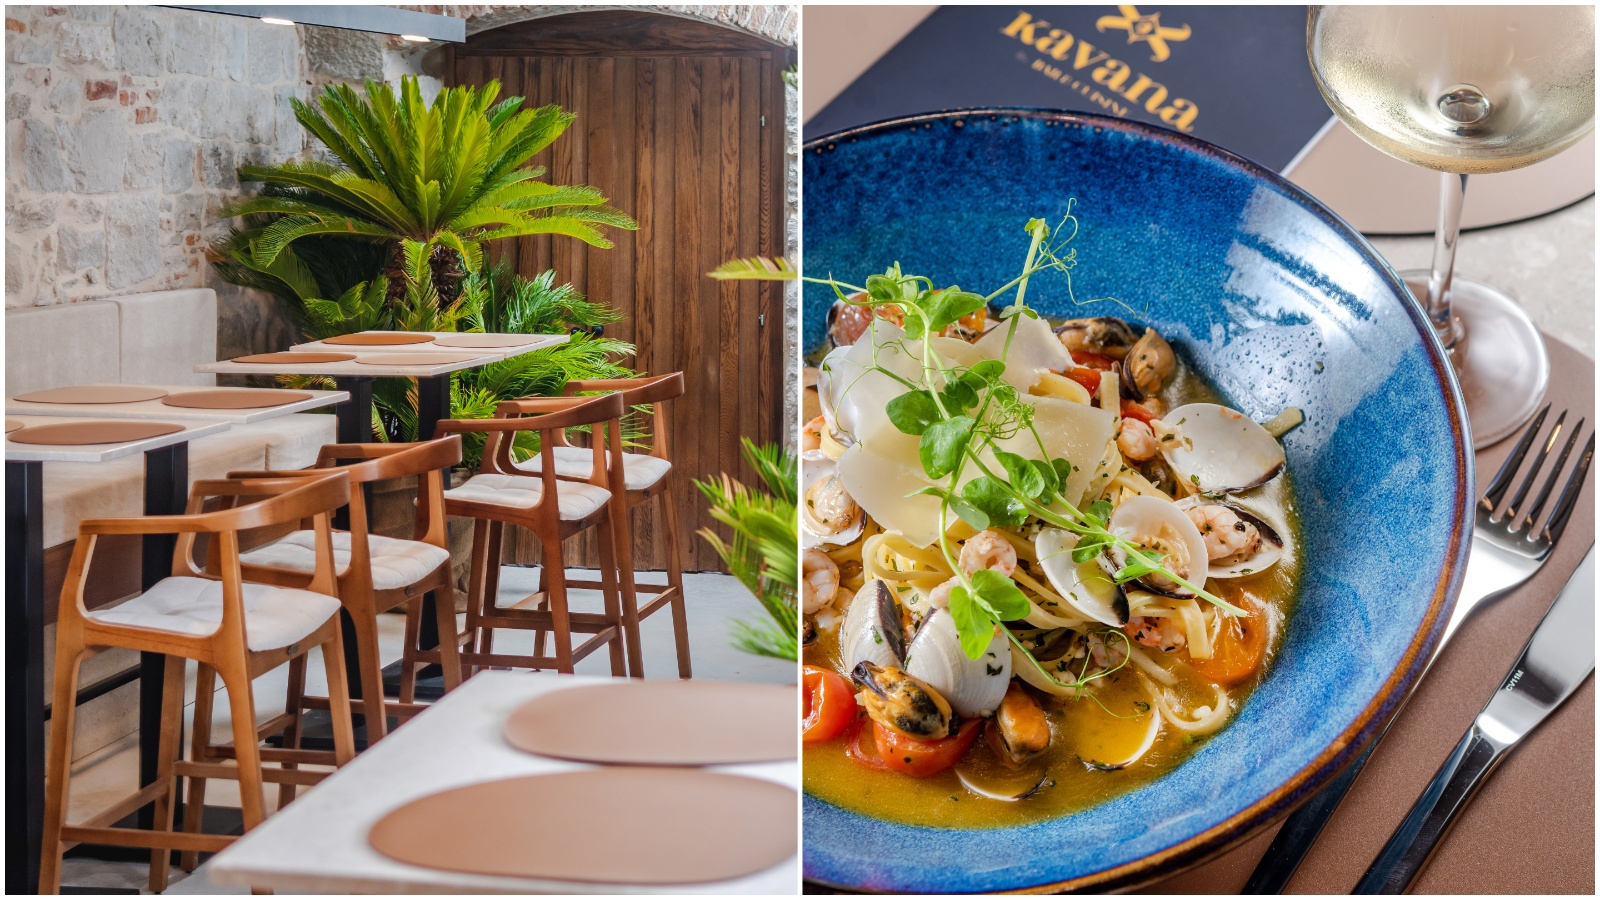 Posjetili smo genijalno novo mjesto u srcu Splita – Kavana bar & cuisine